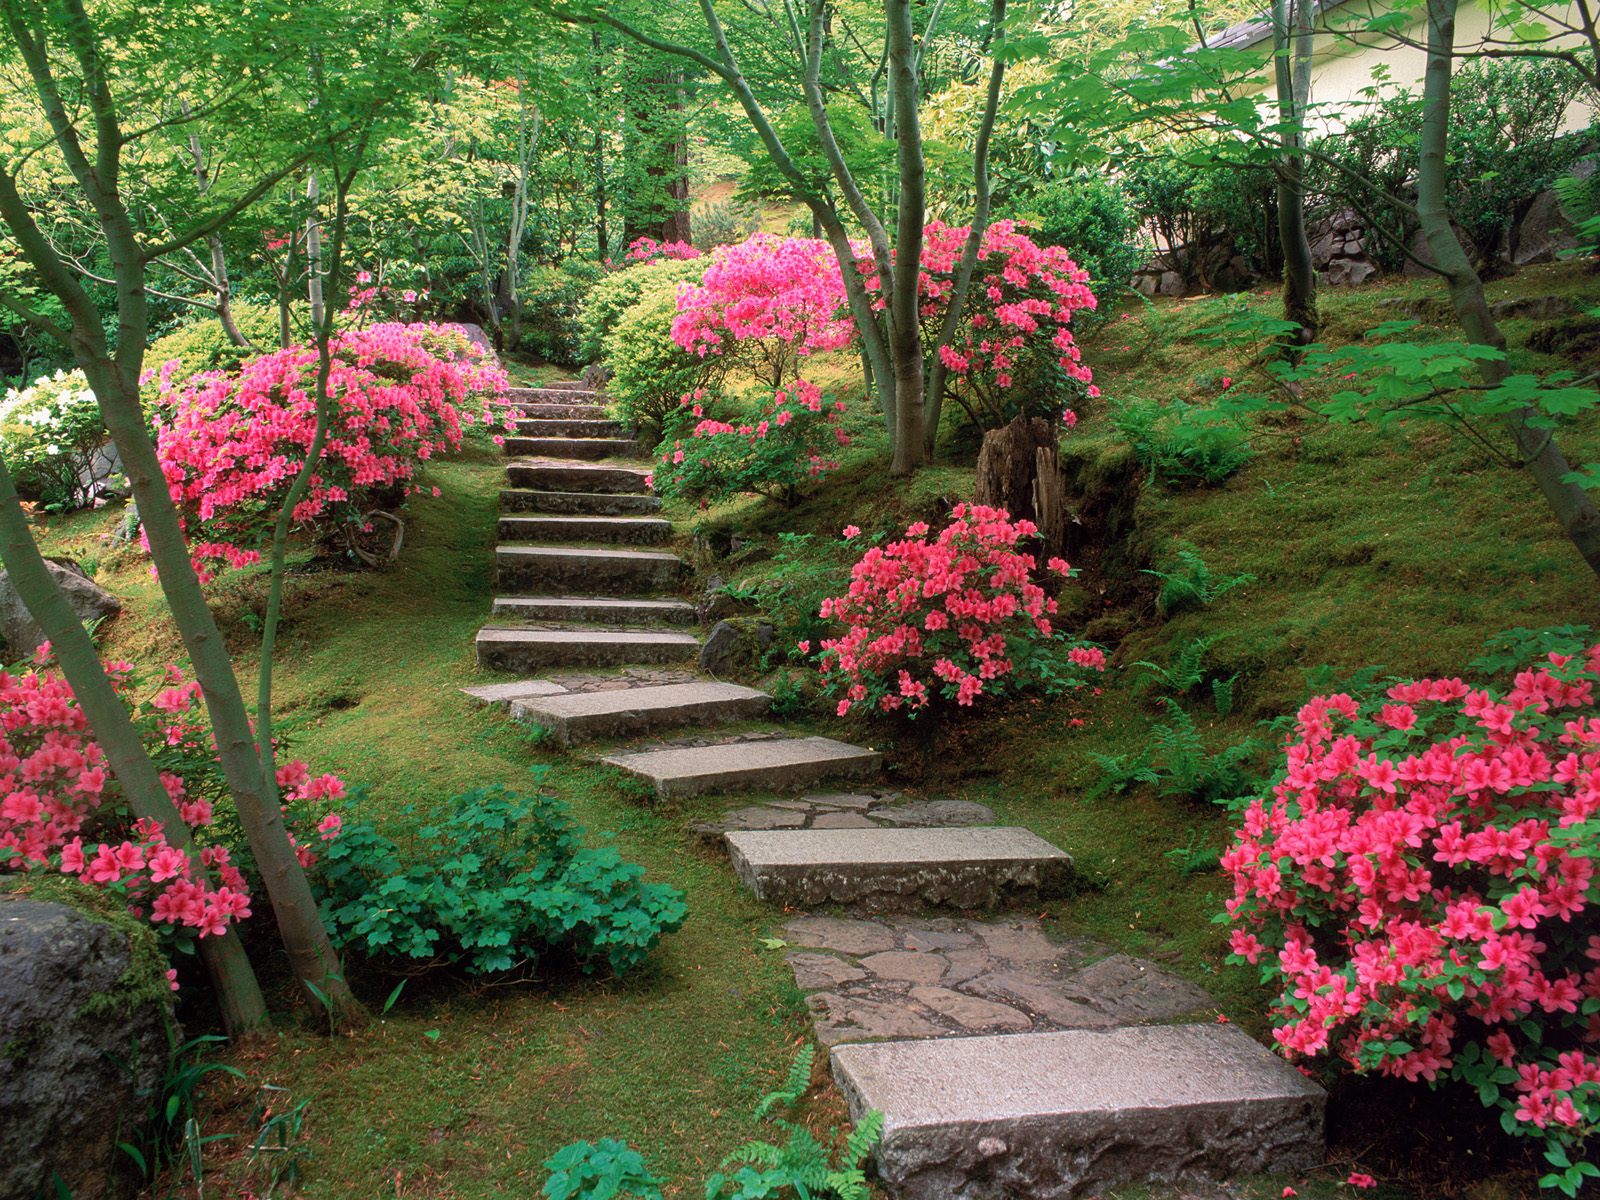 http://3.bp.blogspot.com/-gNKhP4Y3mKM/T03-JZbYnUI/AAAAAAAAAGA/mWThqQVYVps/s1600/azaleas_japanese_garden-normal.jpg